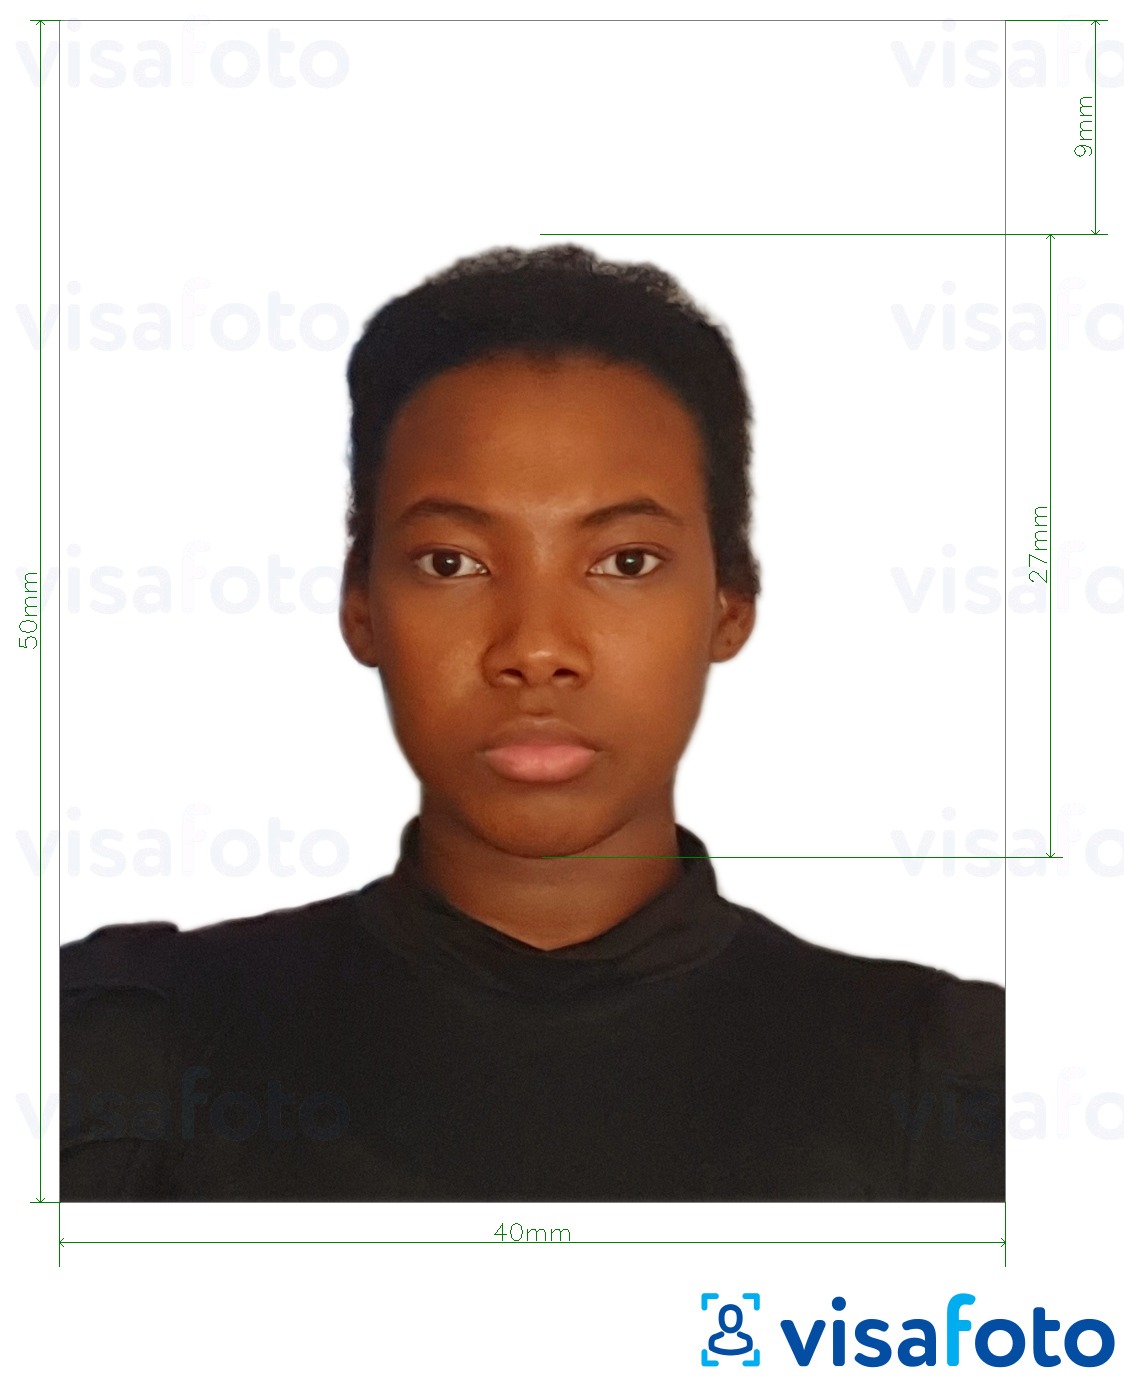 Contoh dari foto untuk Kartu ID Kolombia 4x5 cm dengan ukuran spesifikasi yang tepat